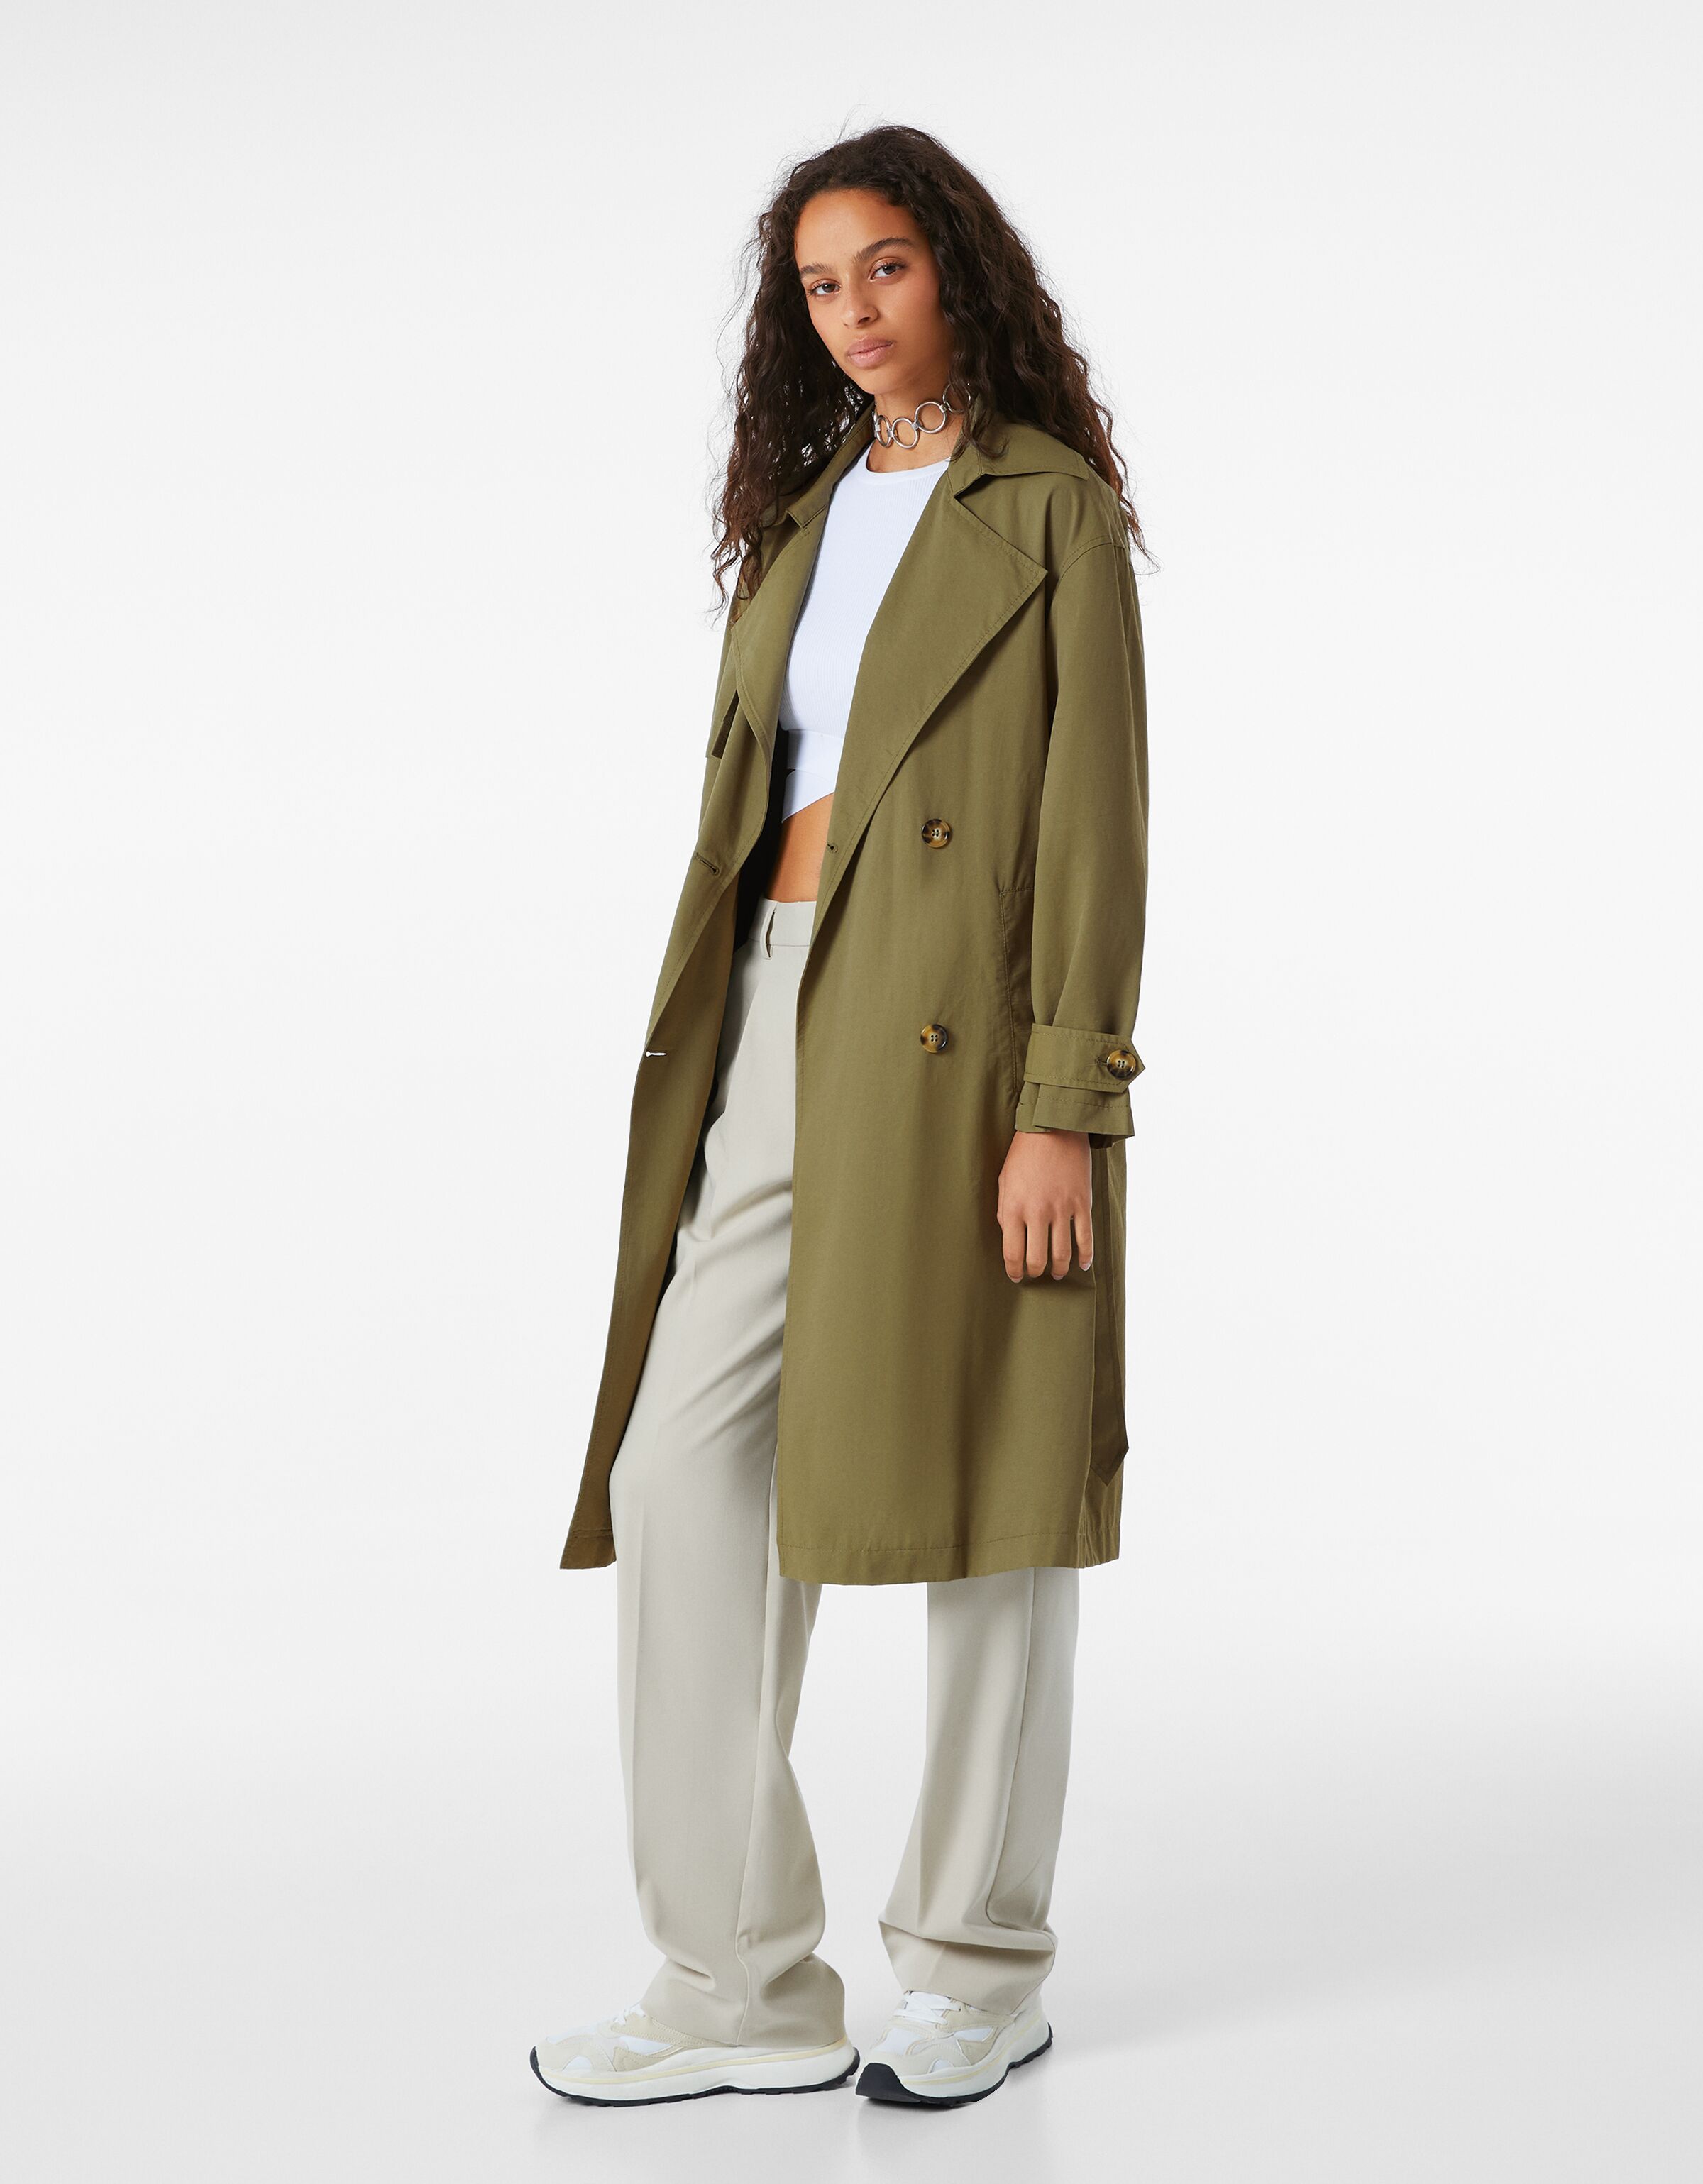 discount 53% Bershka Long coat WOMEN FASHION Coats Combined Beige S 